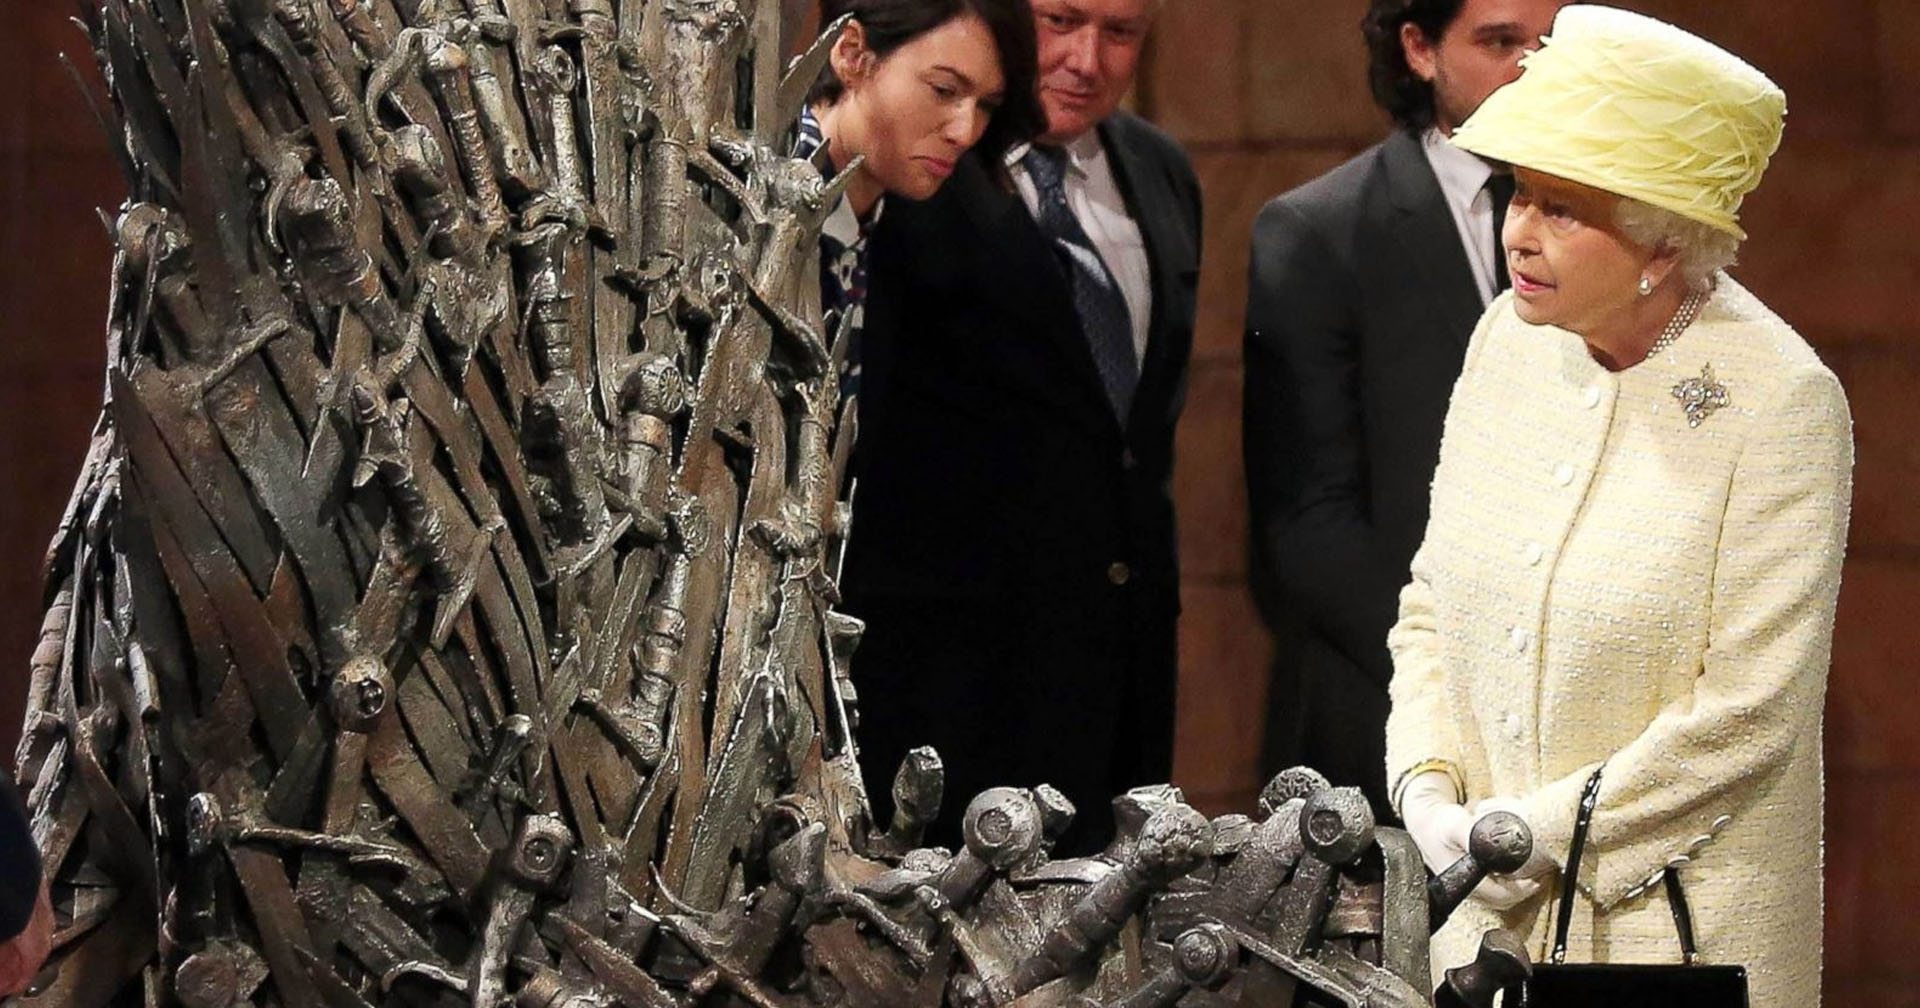 ควีนเอลิซาเบธที่ 2 เคยปฏิเสธการนั่งบนบัลลังก์เหล็กจากซีรีส์ ‘Game of Thrones’